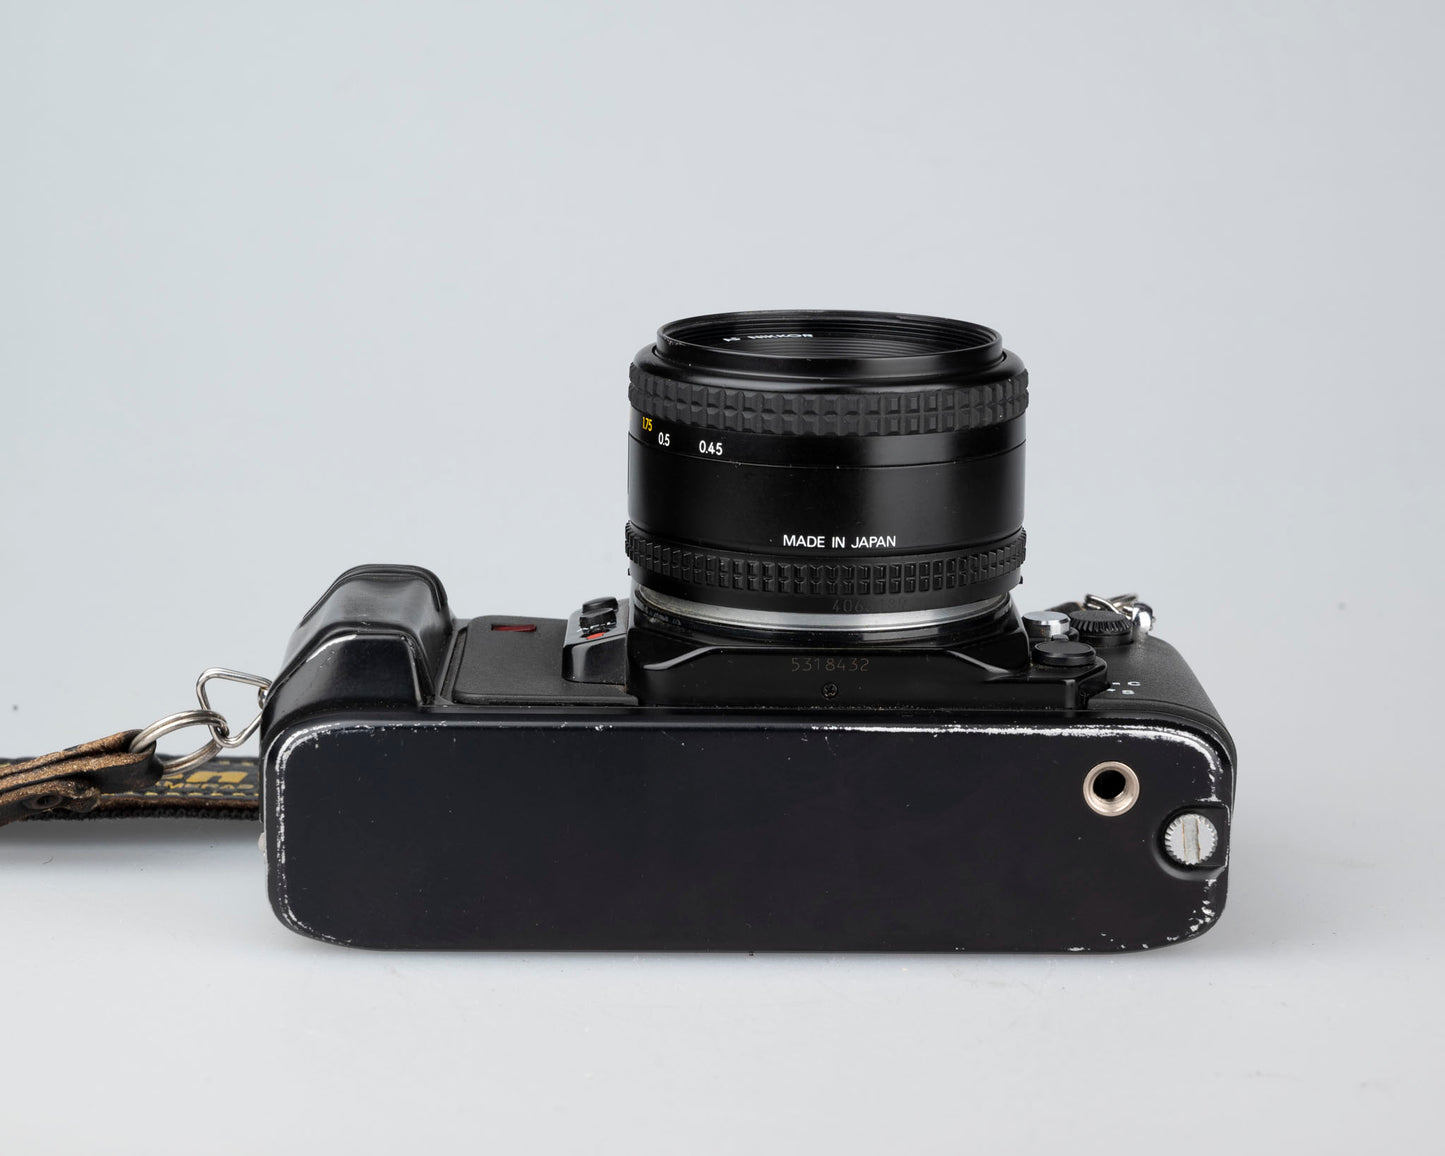 Nikon N2020 35mm film SLR w/ AF Nikkor 50mm f1.8 lens